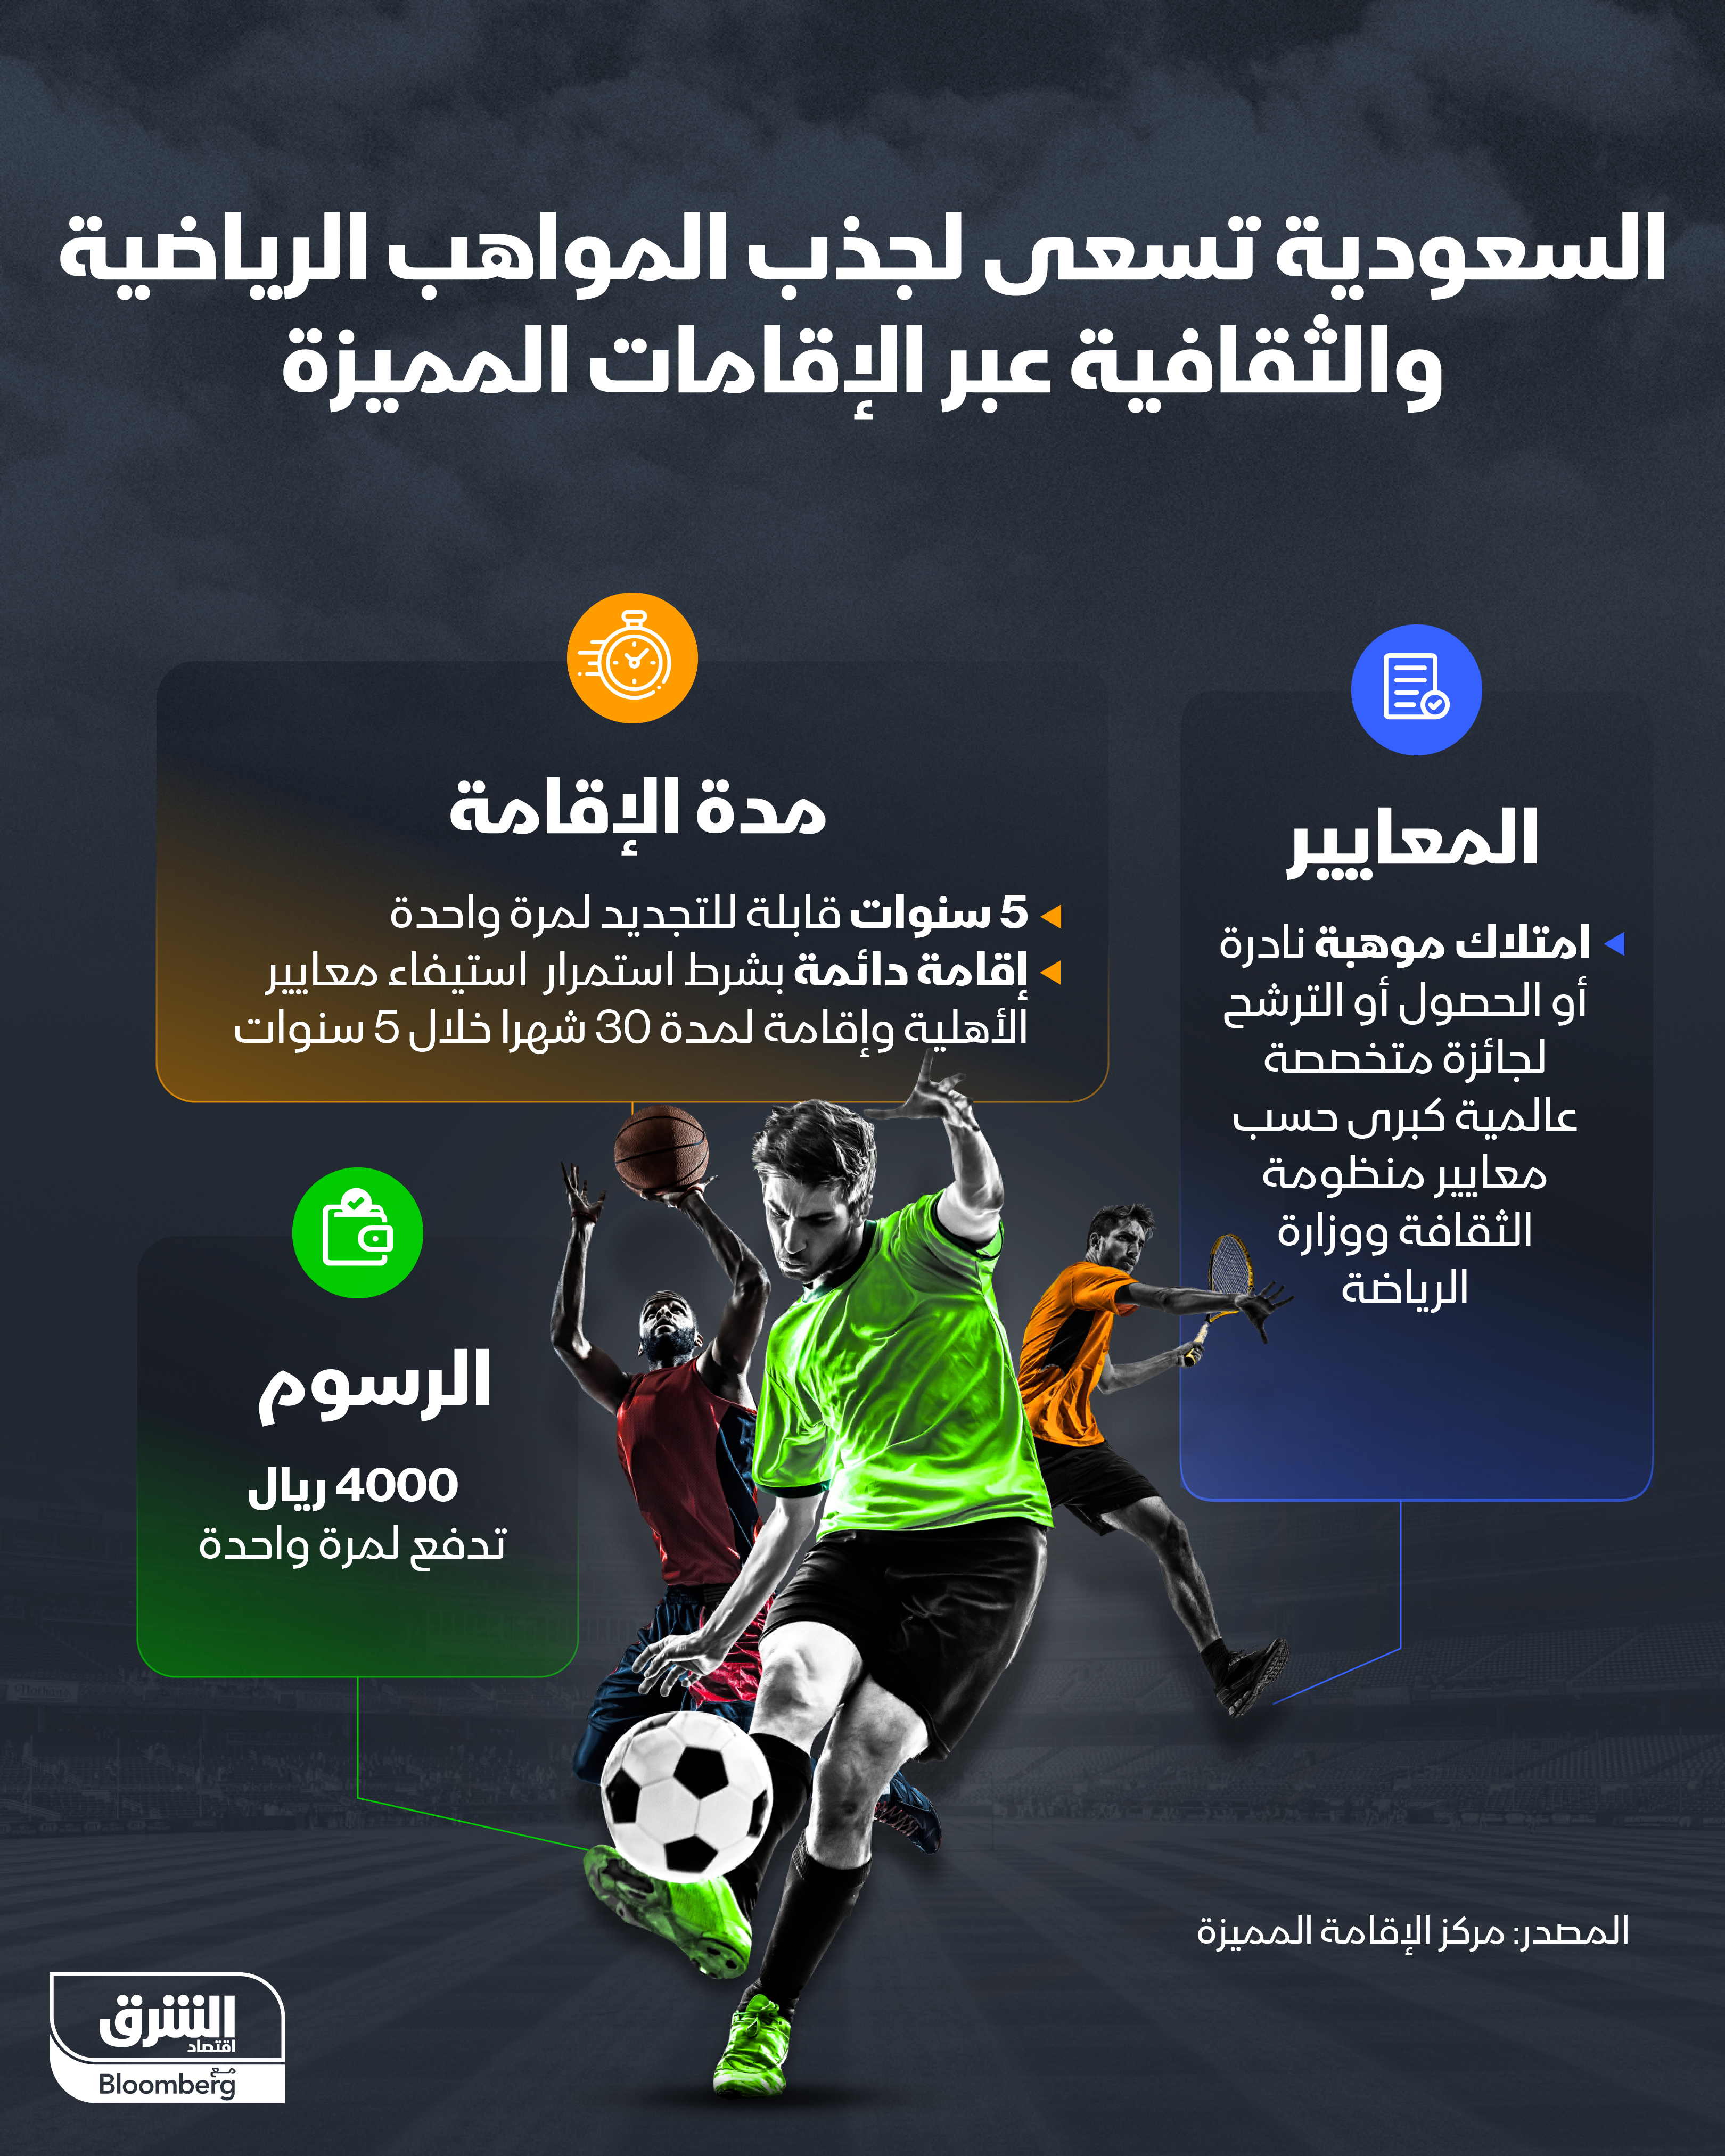 مزايا وشروط الحصول على الإقامة المميزة في السعودية لأصحاب المواهب الرياضية